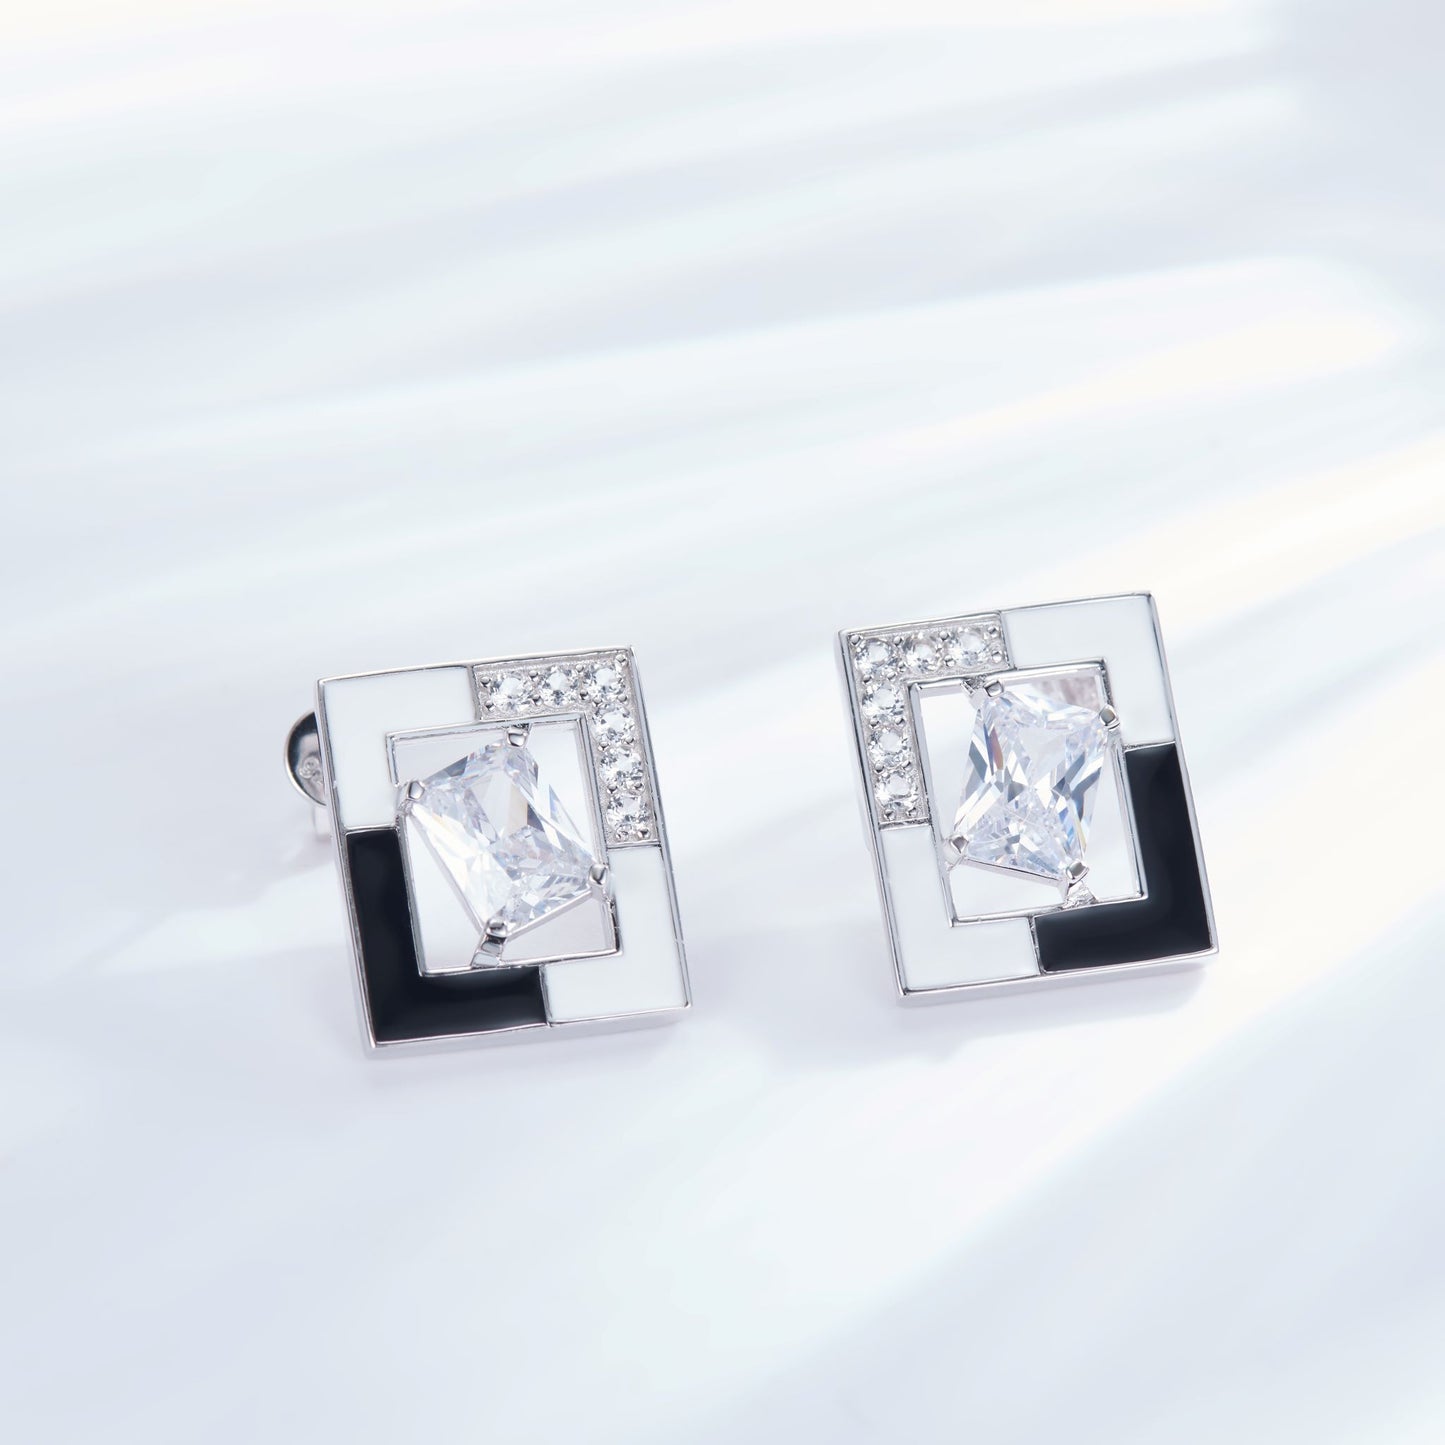 Square Enamel Silver Studs Earrings for Women